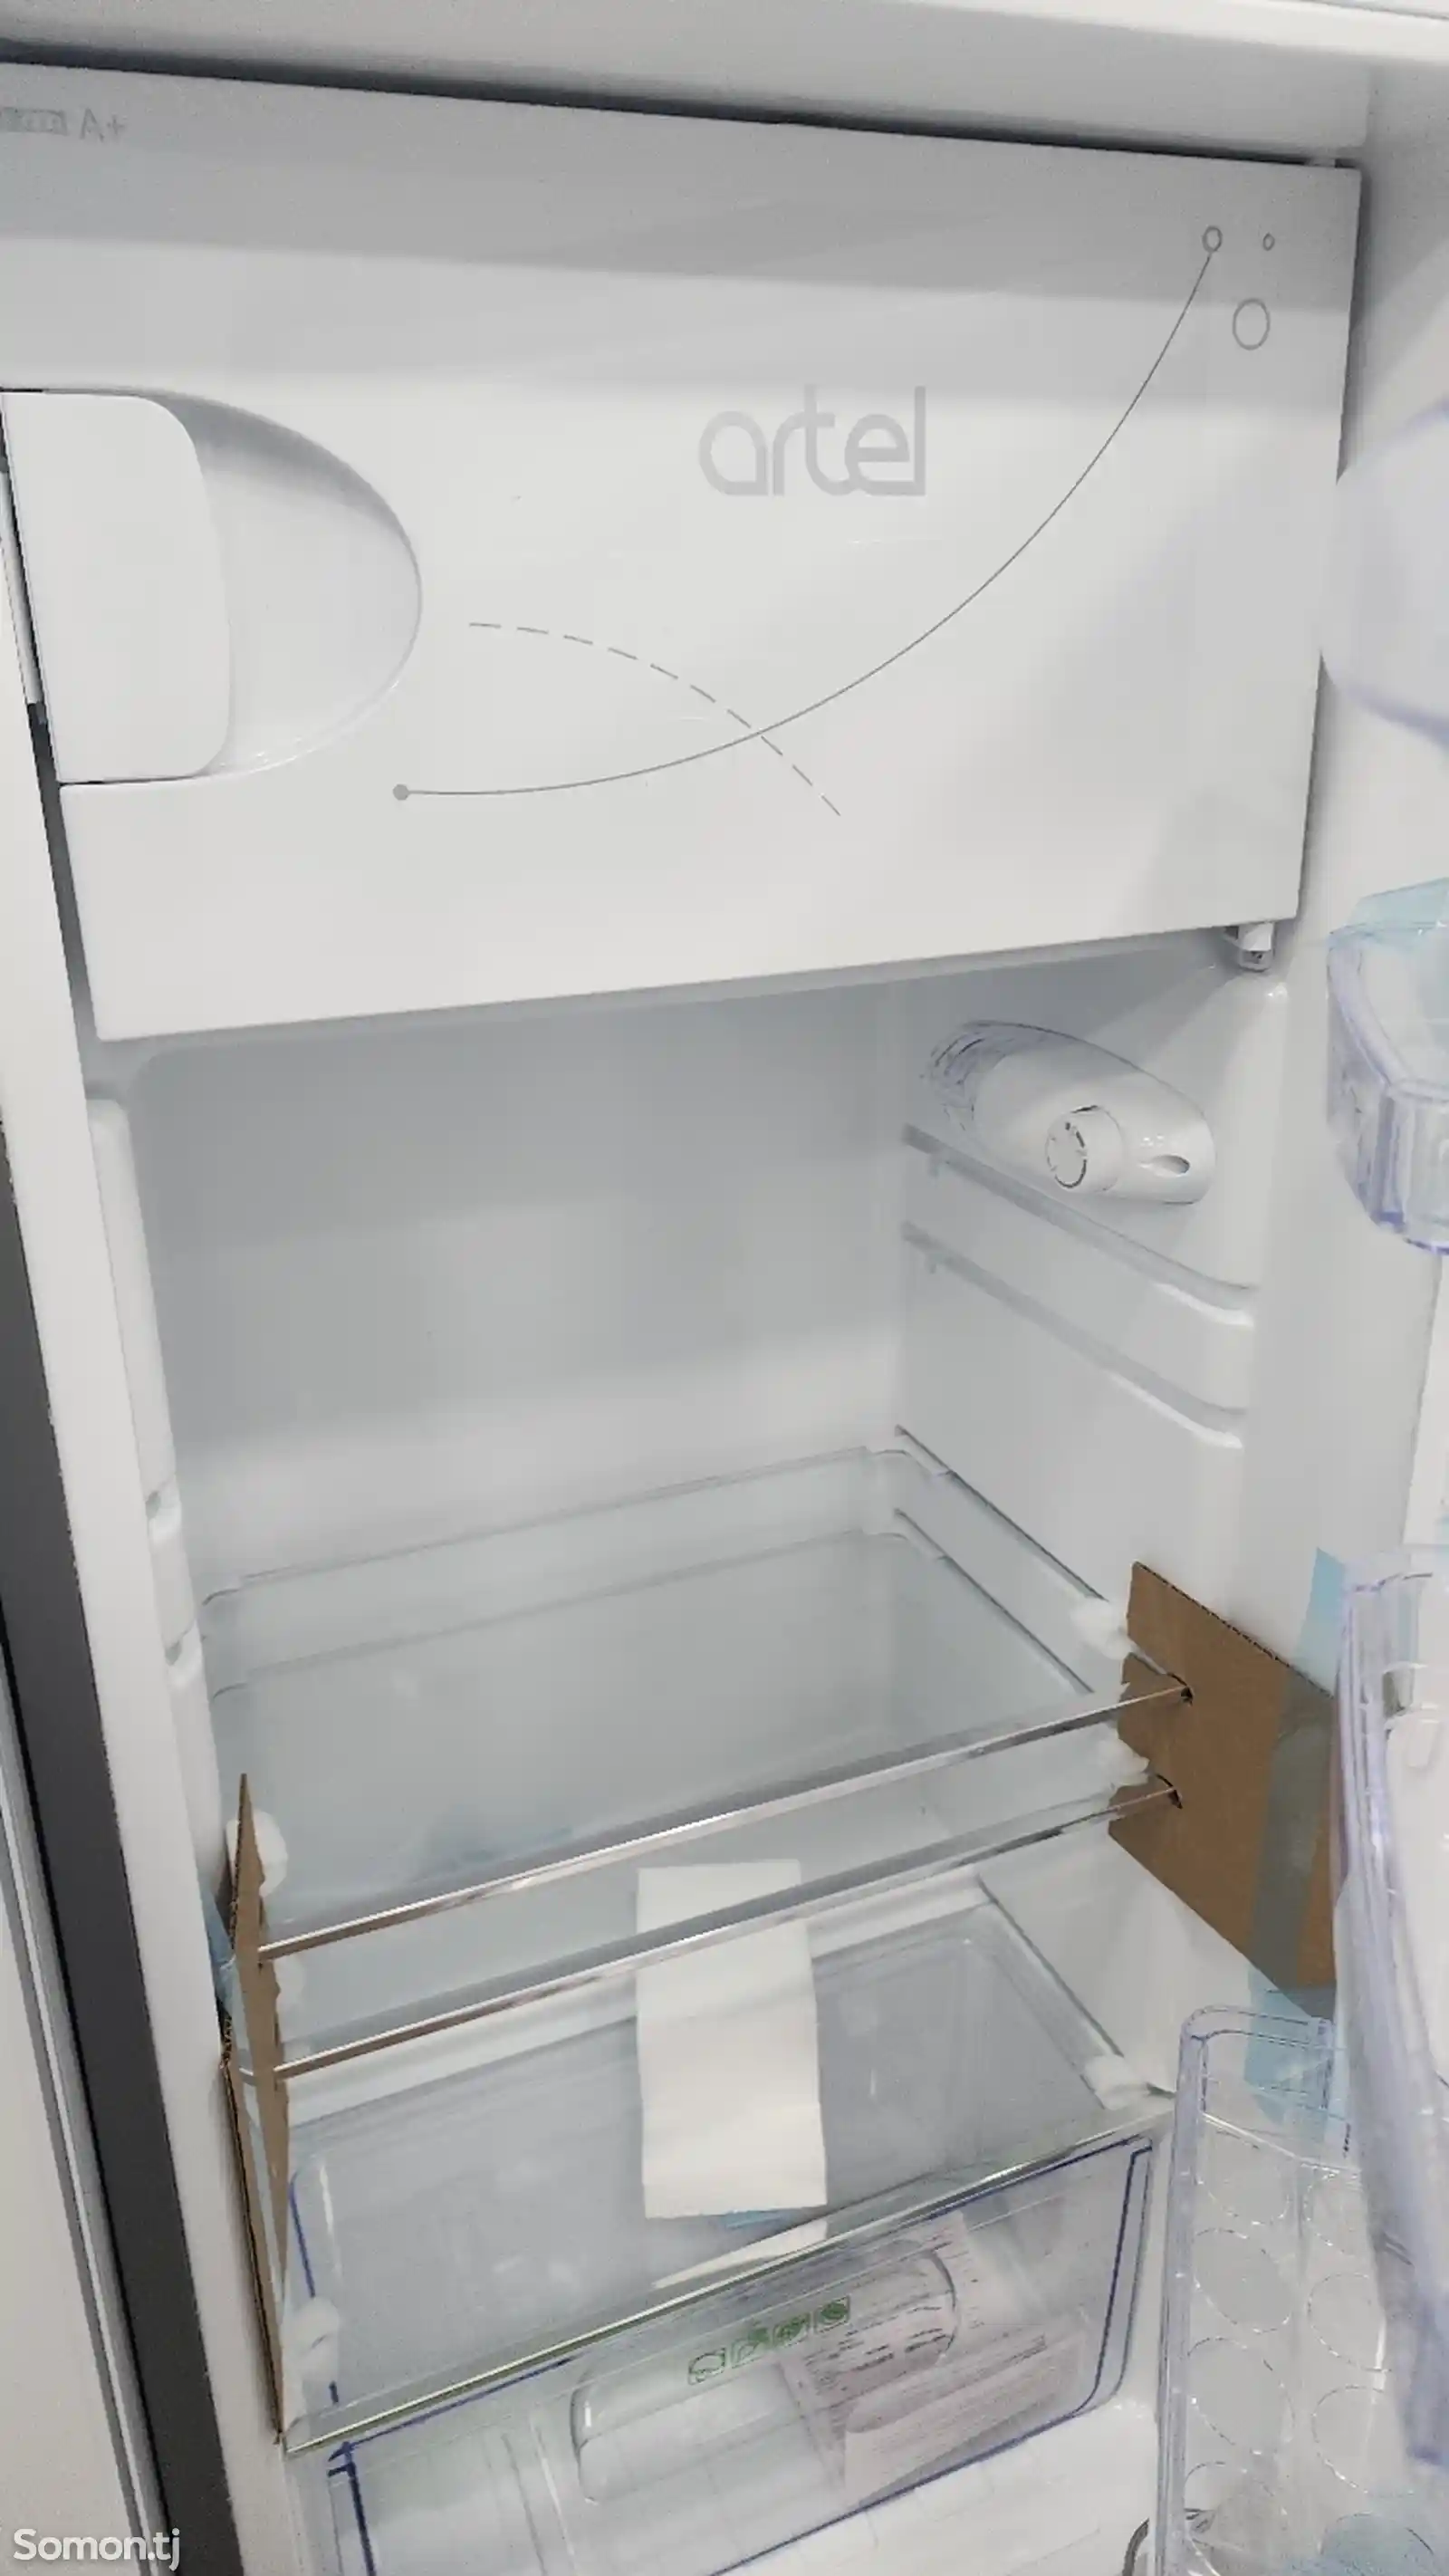 Однокамерный холодильник Artel 228-1